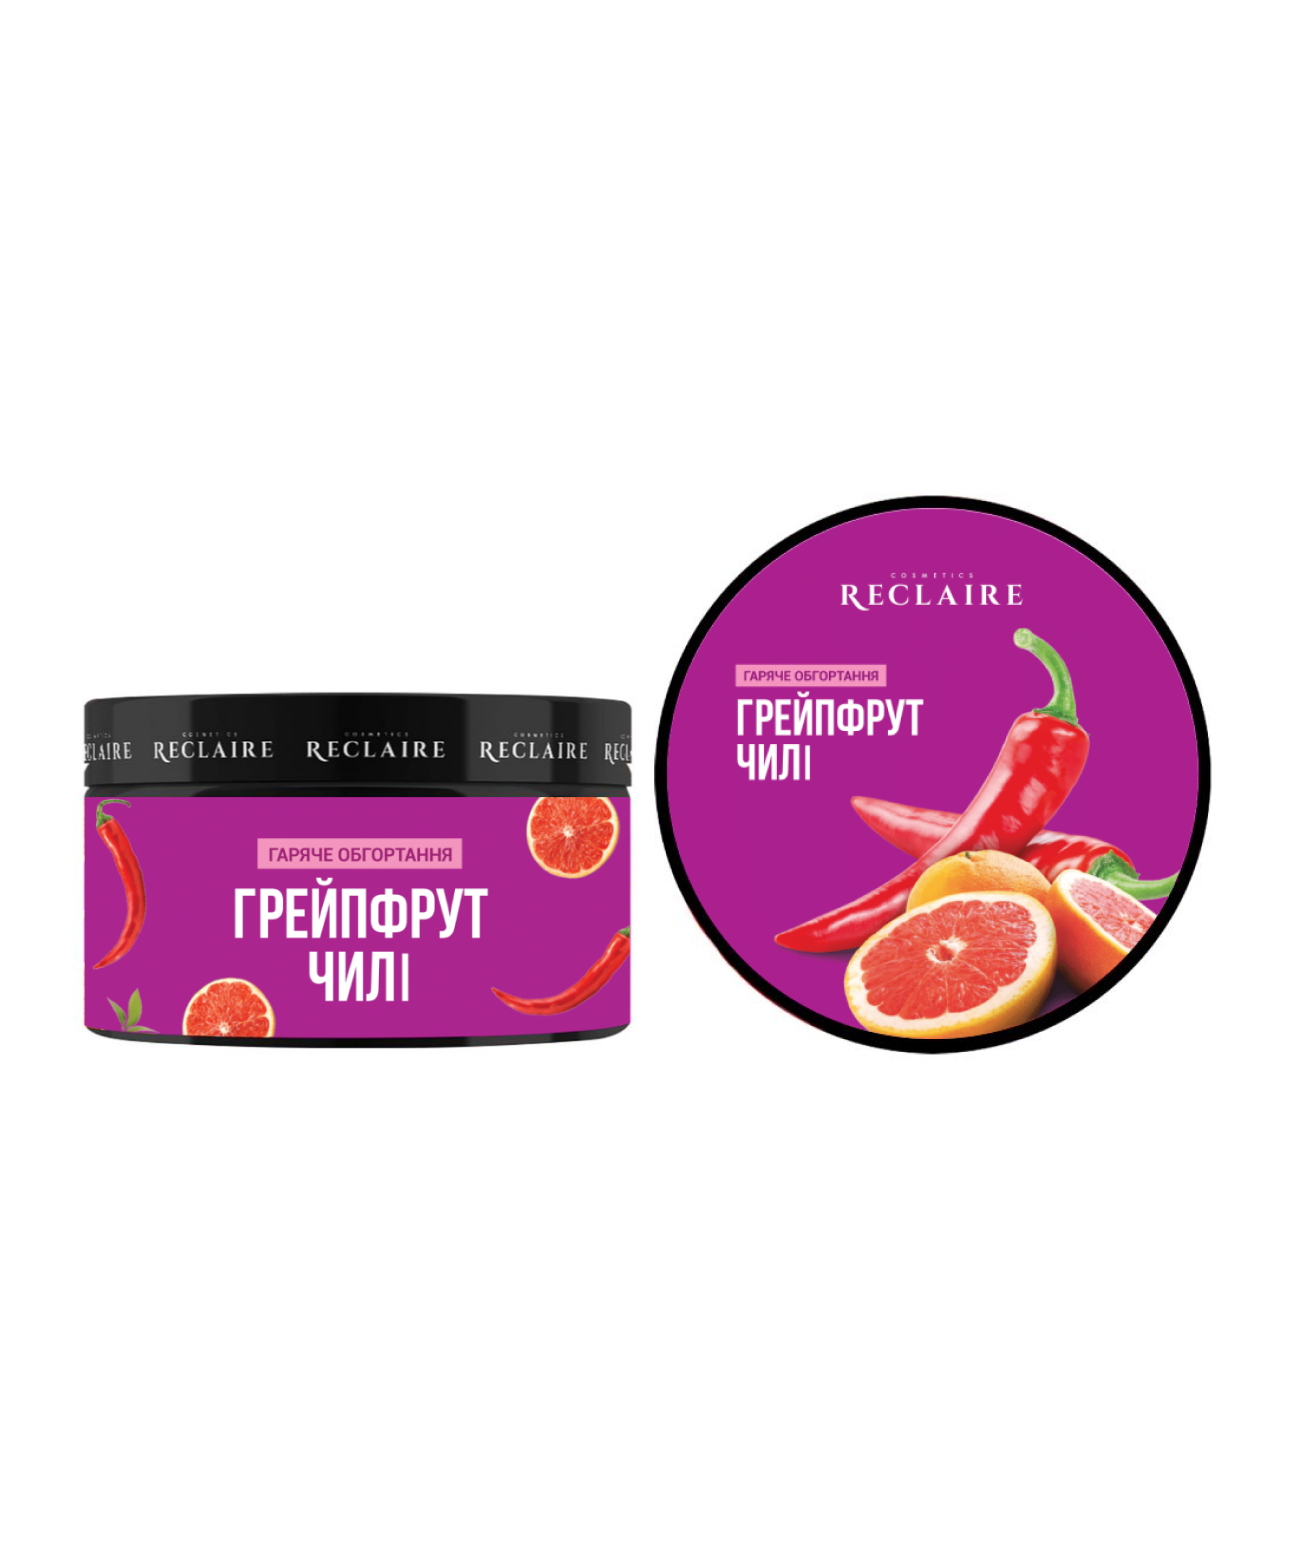 Hot Anti-Cellulite Body Wrap "Grapefruit & Chilli" Reclaire